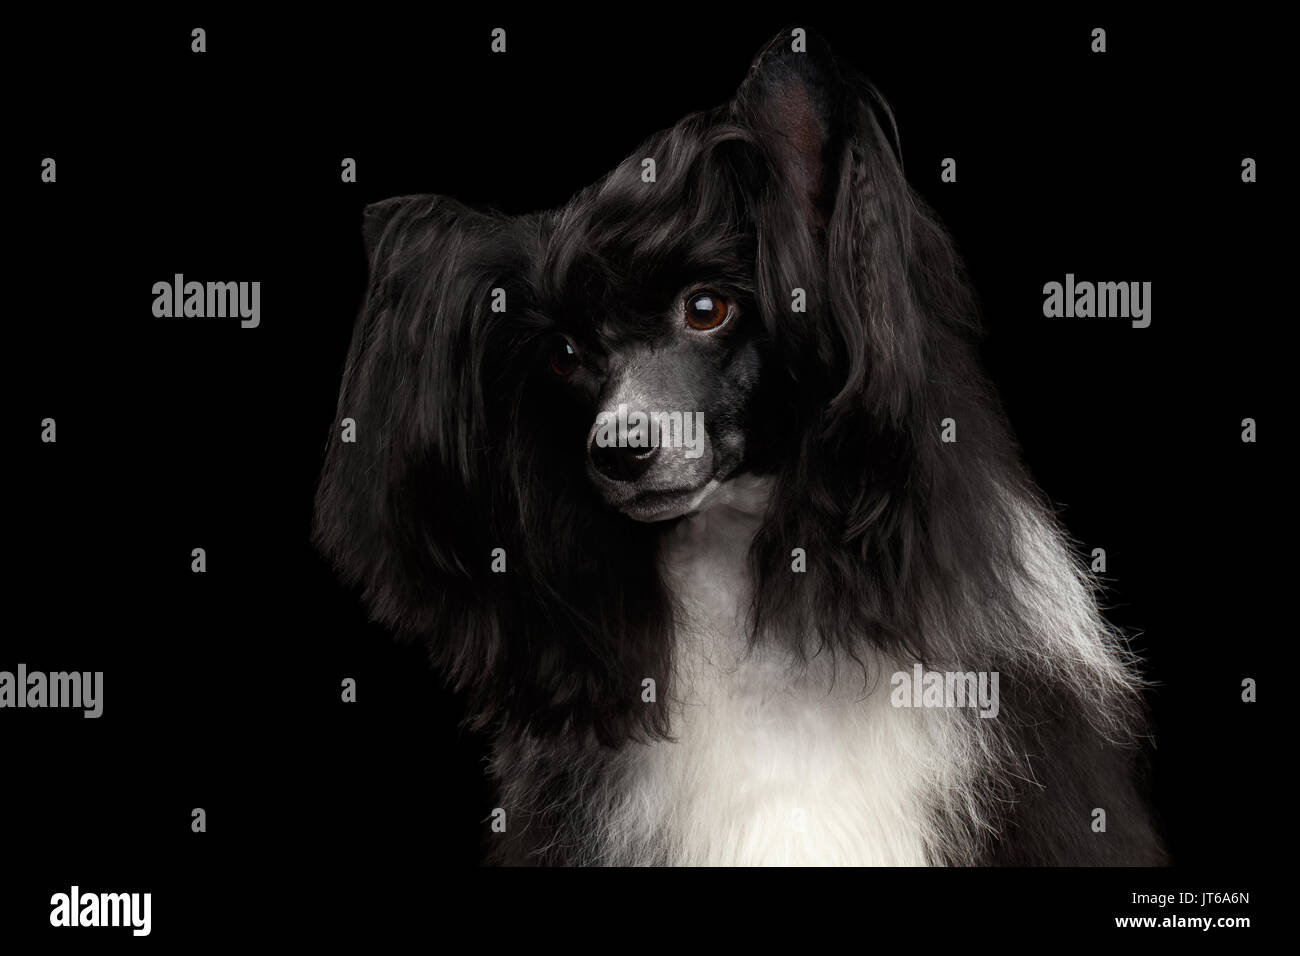 Chinese Crested Dog on black background Stock Photo